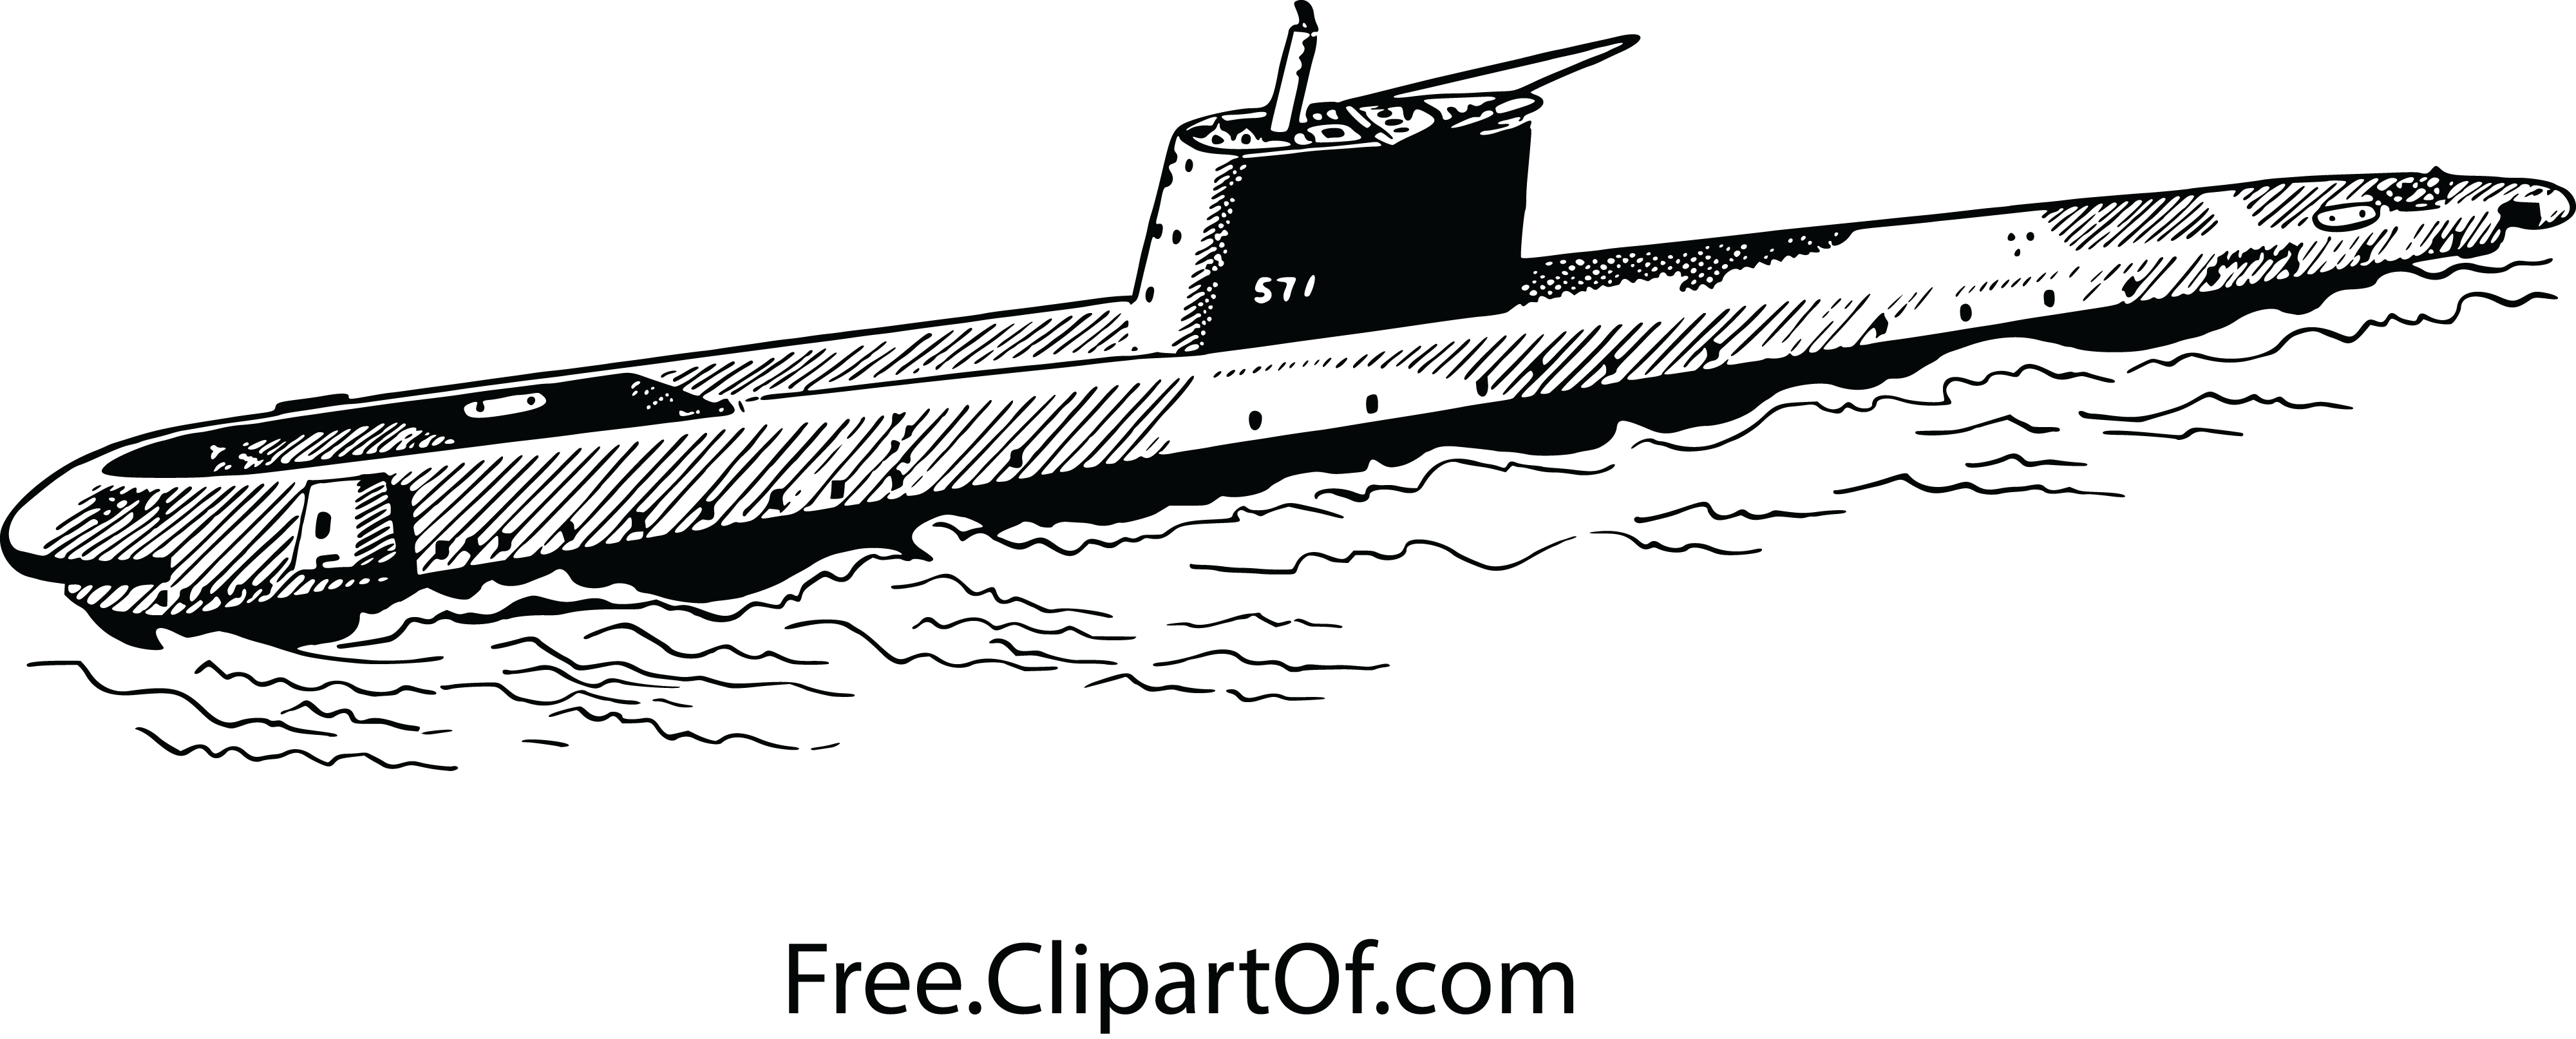 Navy clipart destroyer navy. Best hd submarine clip